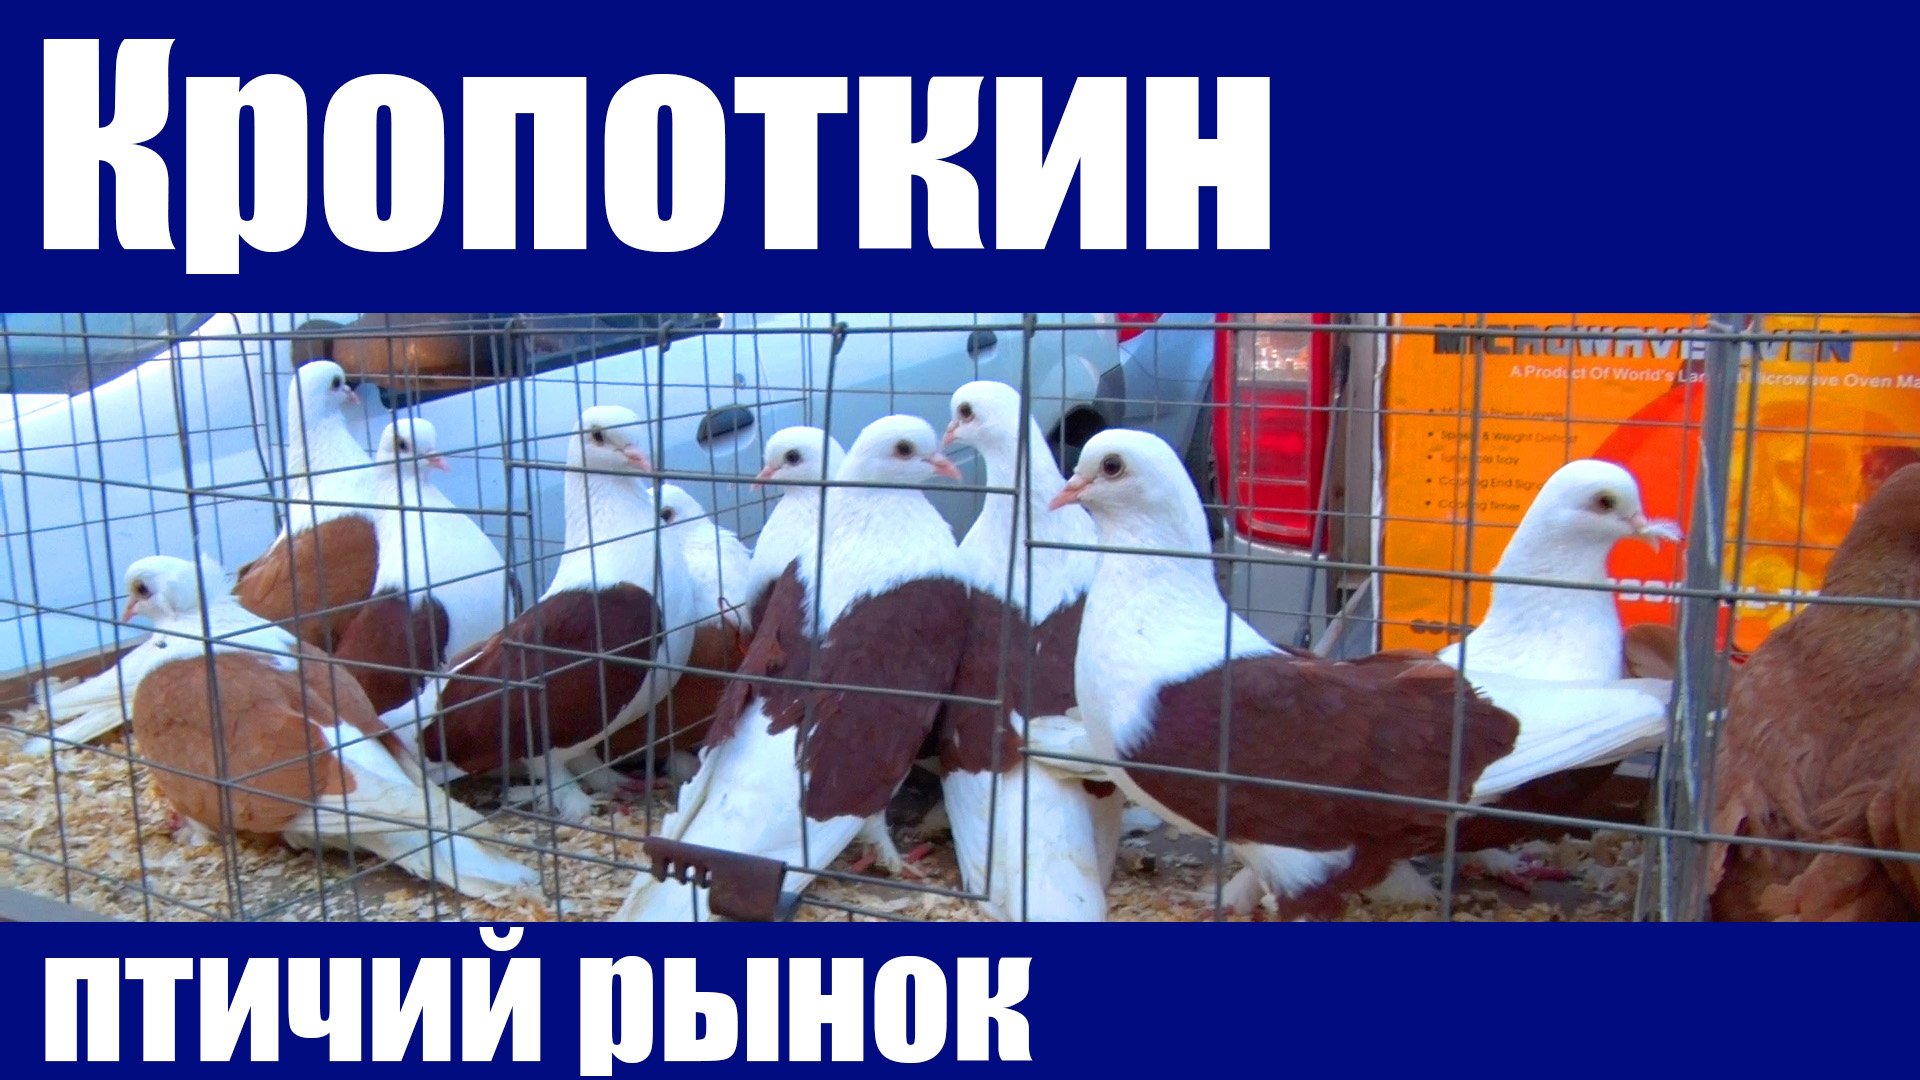 Кропоткин выставка голубей. Птичий рынок в Кропоткине. Ярмарка голубей в Кропоткине. Выставка голубей. Выставка голубей в Кропоткине.